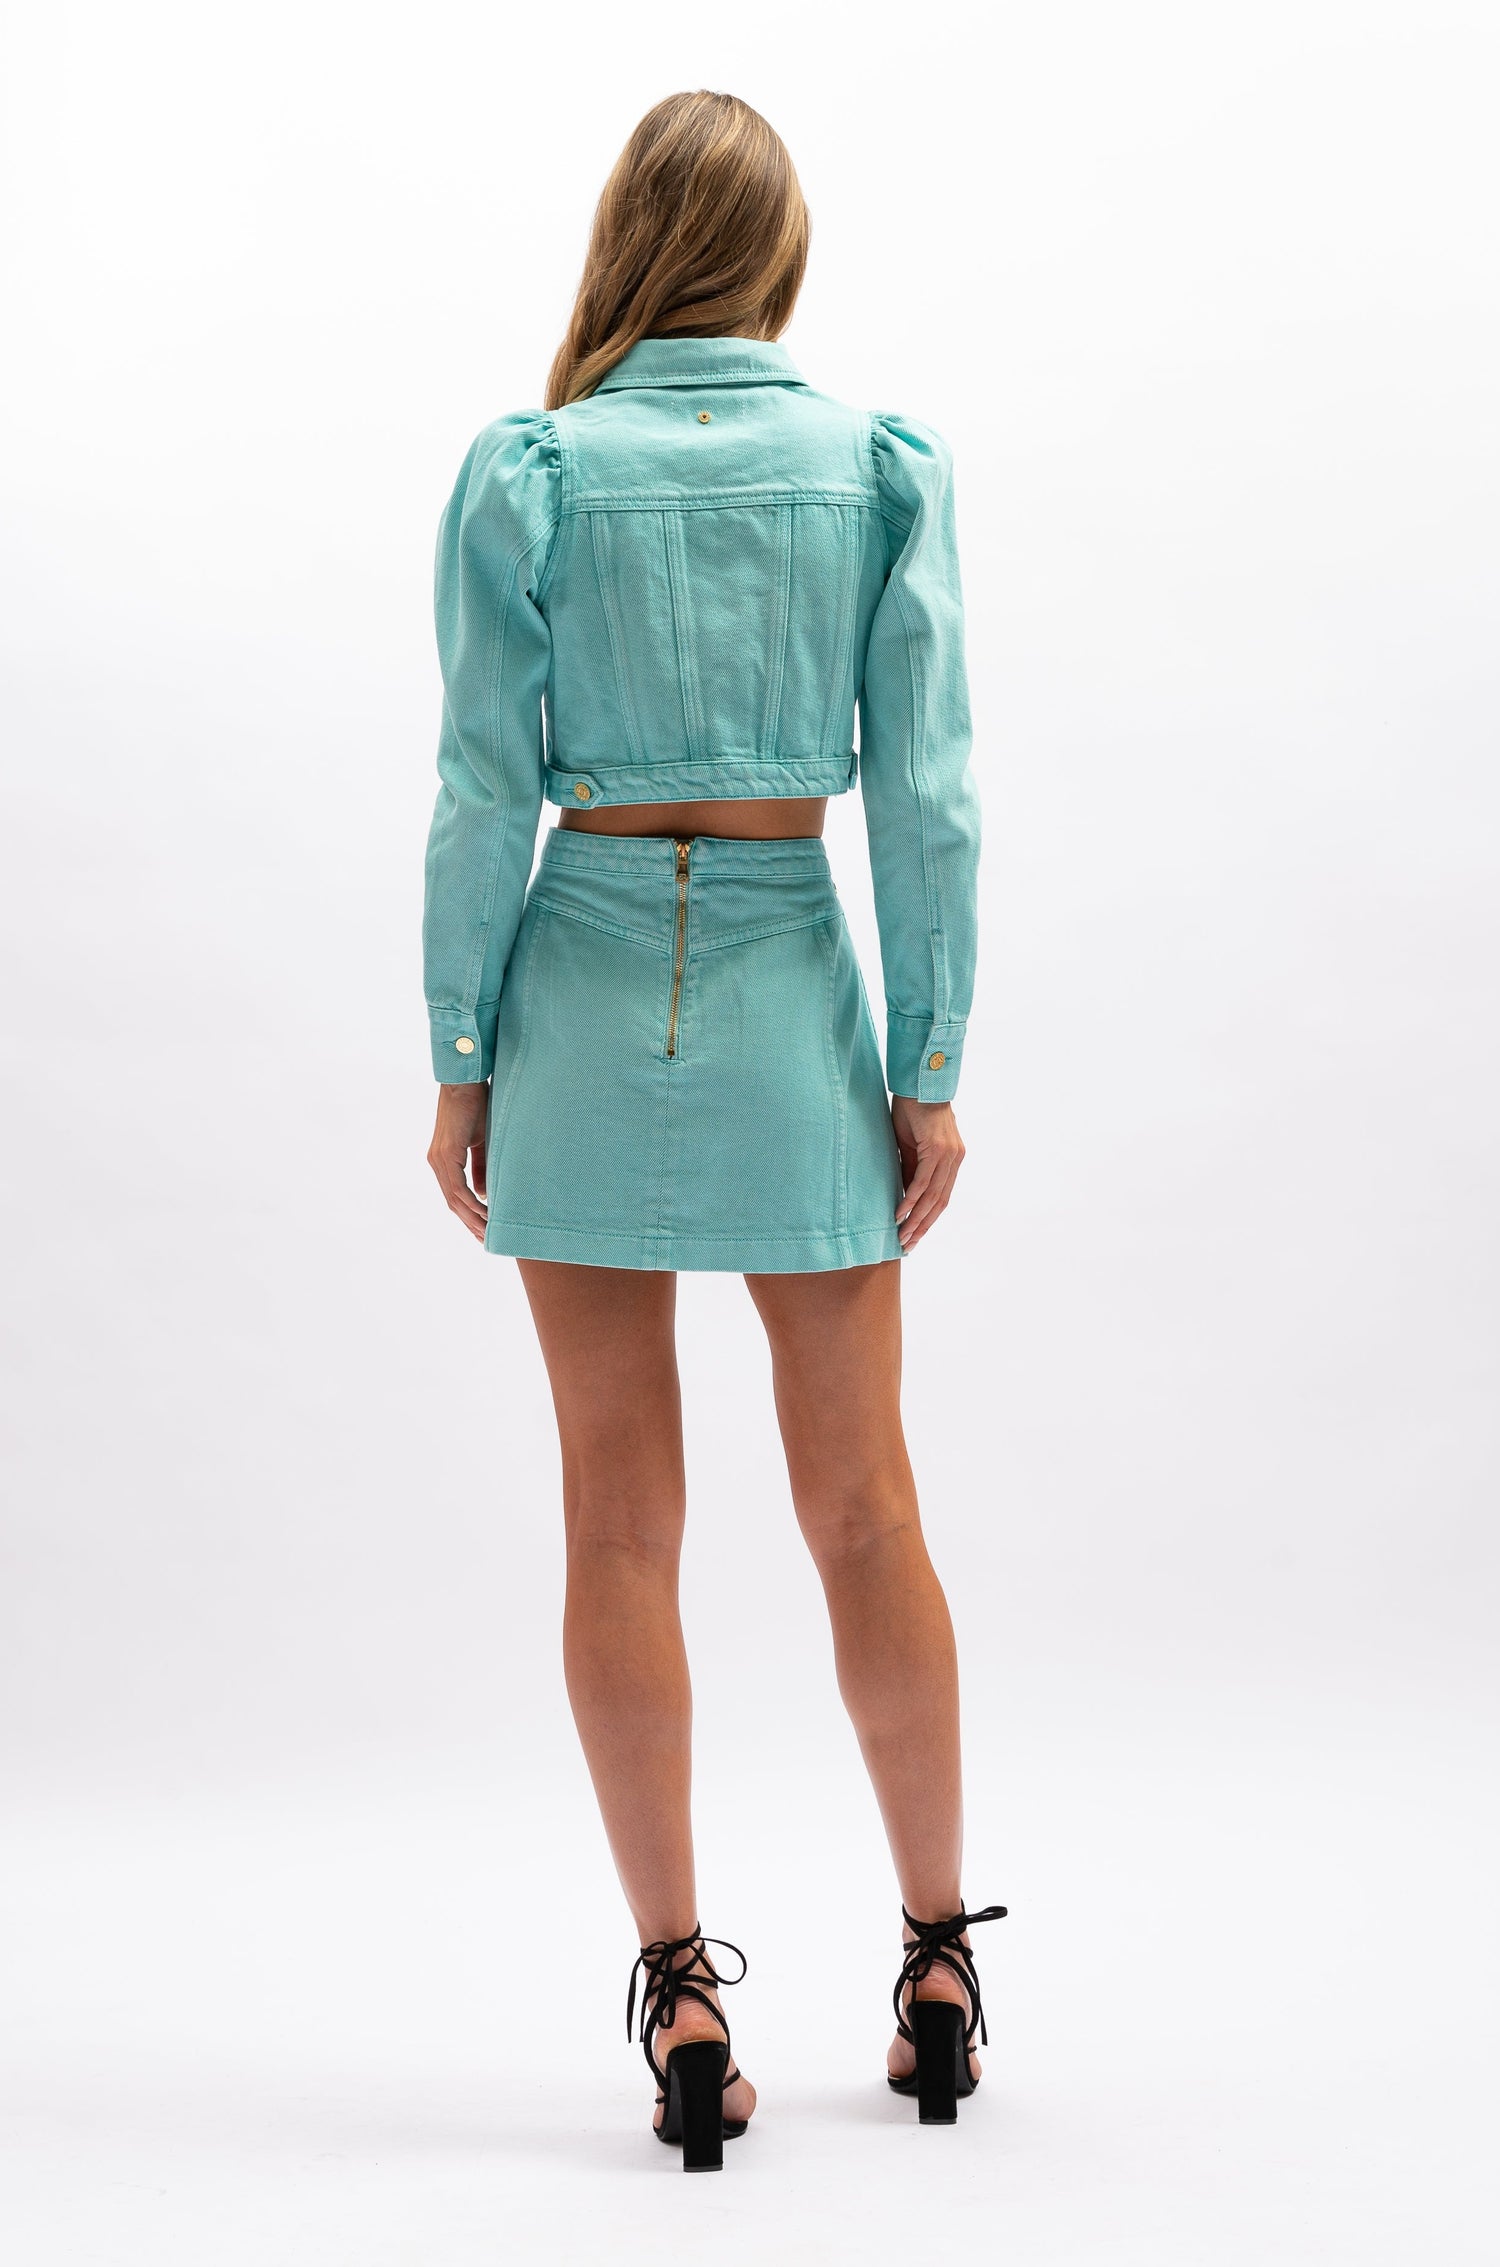 Lottie Jacket - Aquamarine - aqua blue cropped jacket with Mutton sleeve - Aureta